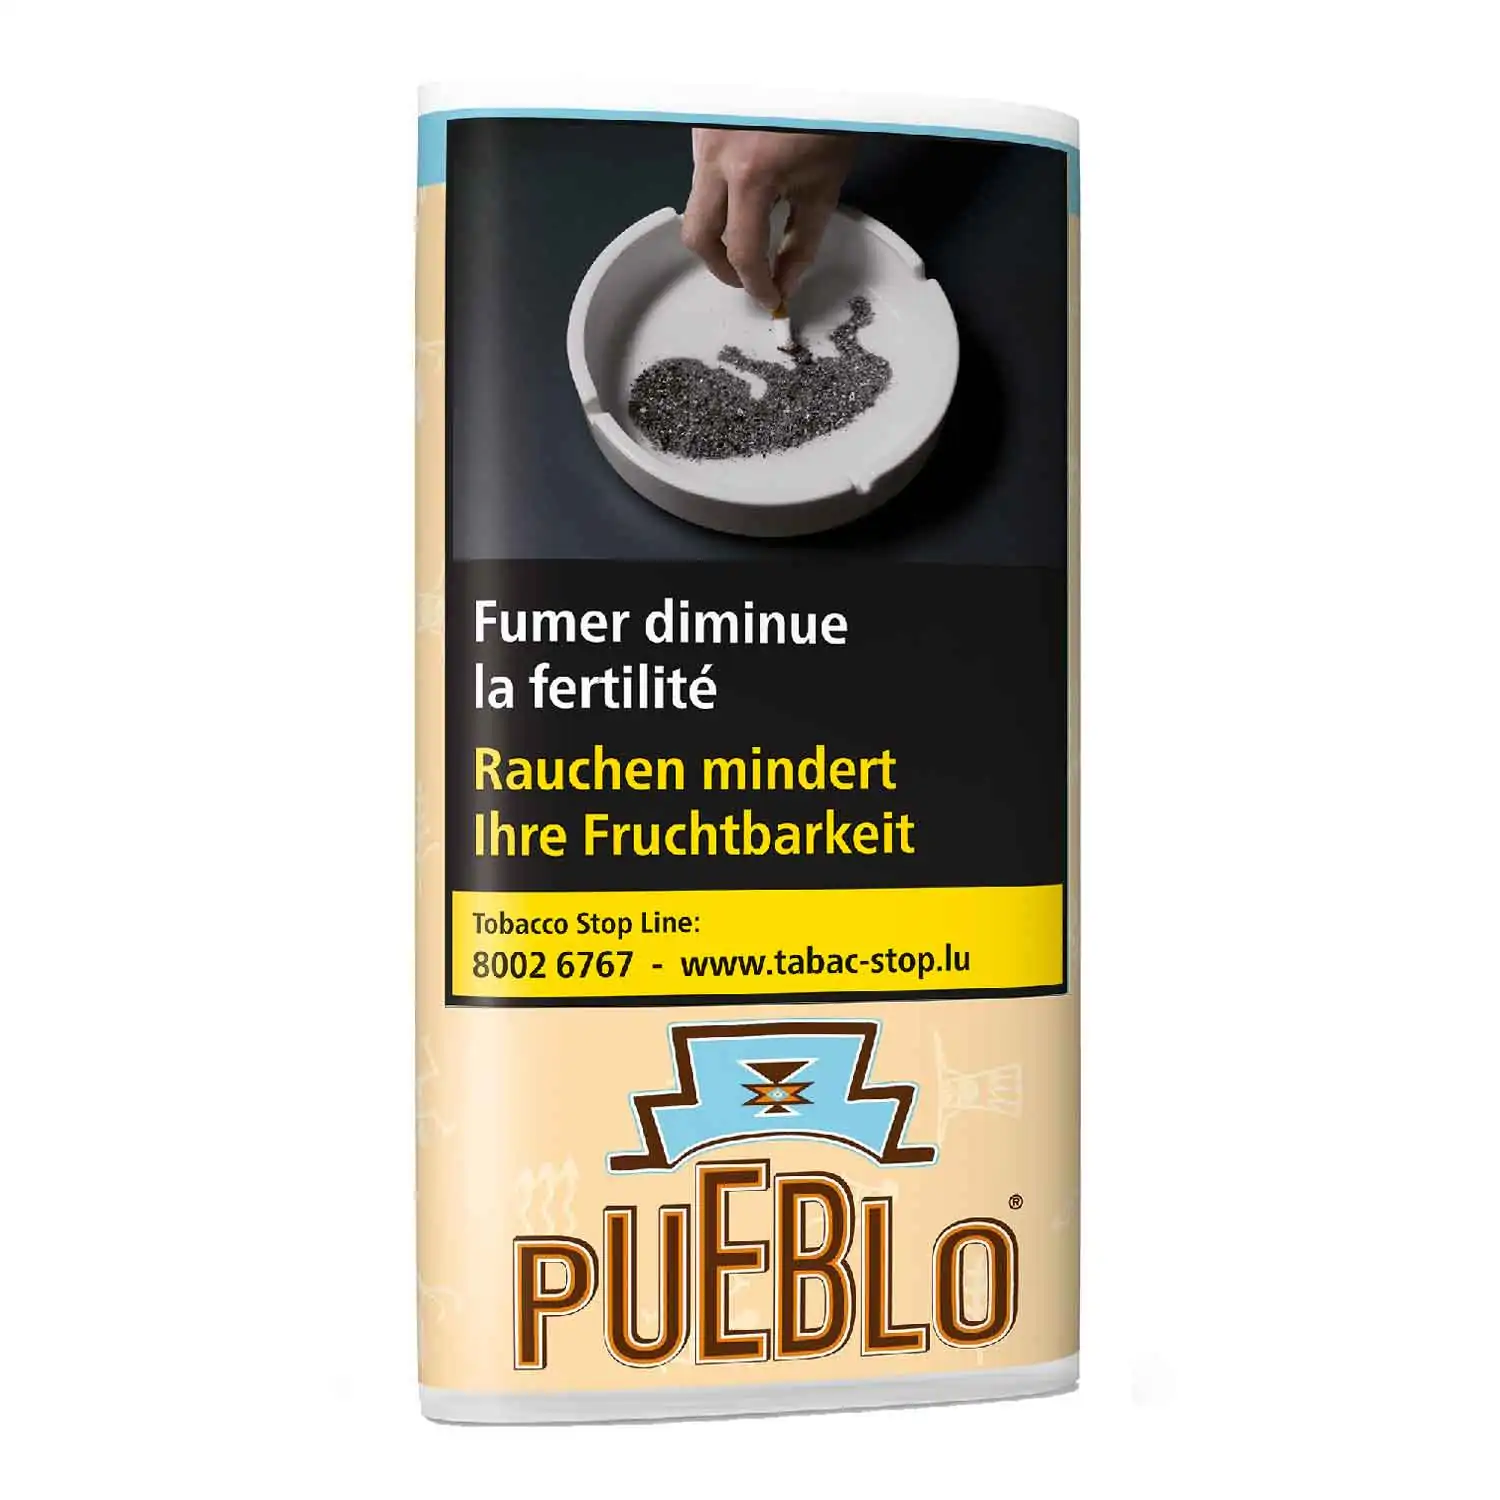 Pueblo classic 30g - Buy at Real Tobacco